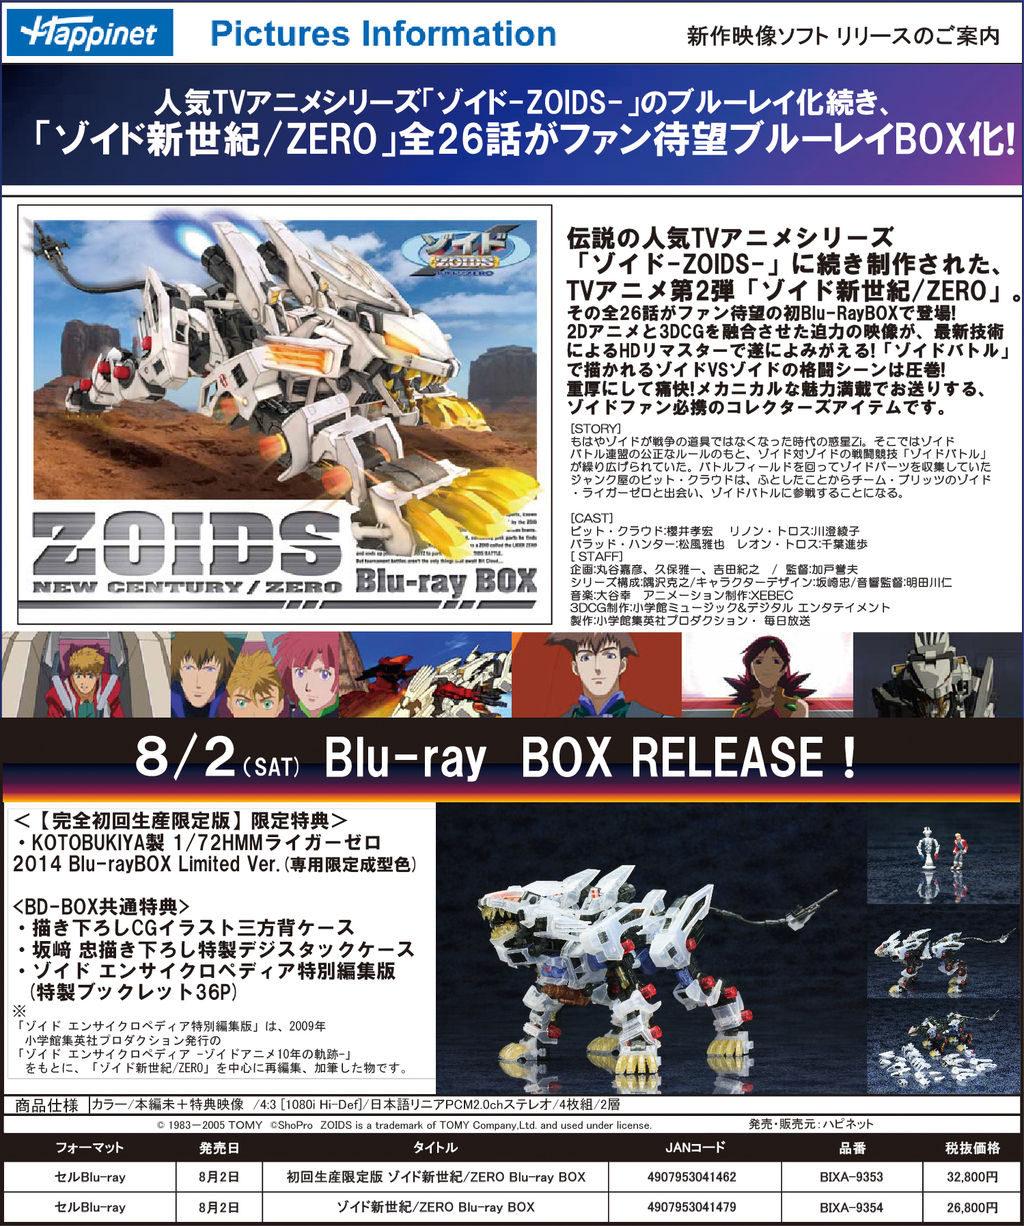 ゾイド新世紀 Zero Blu Ray Box発売記念ニコ生特番レポート コトブログ コトブキヤ公式ブログ